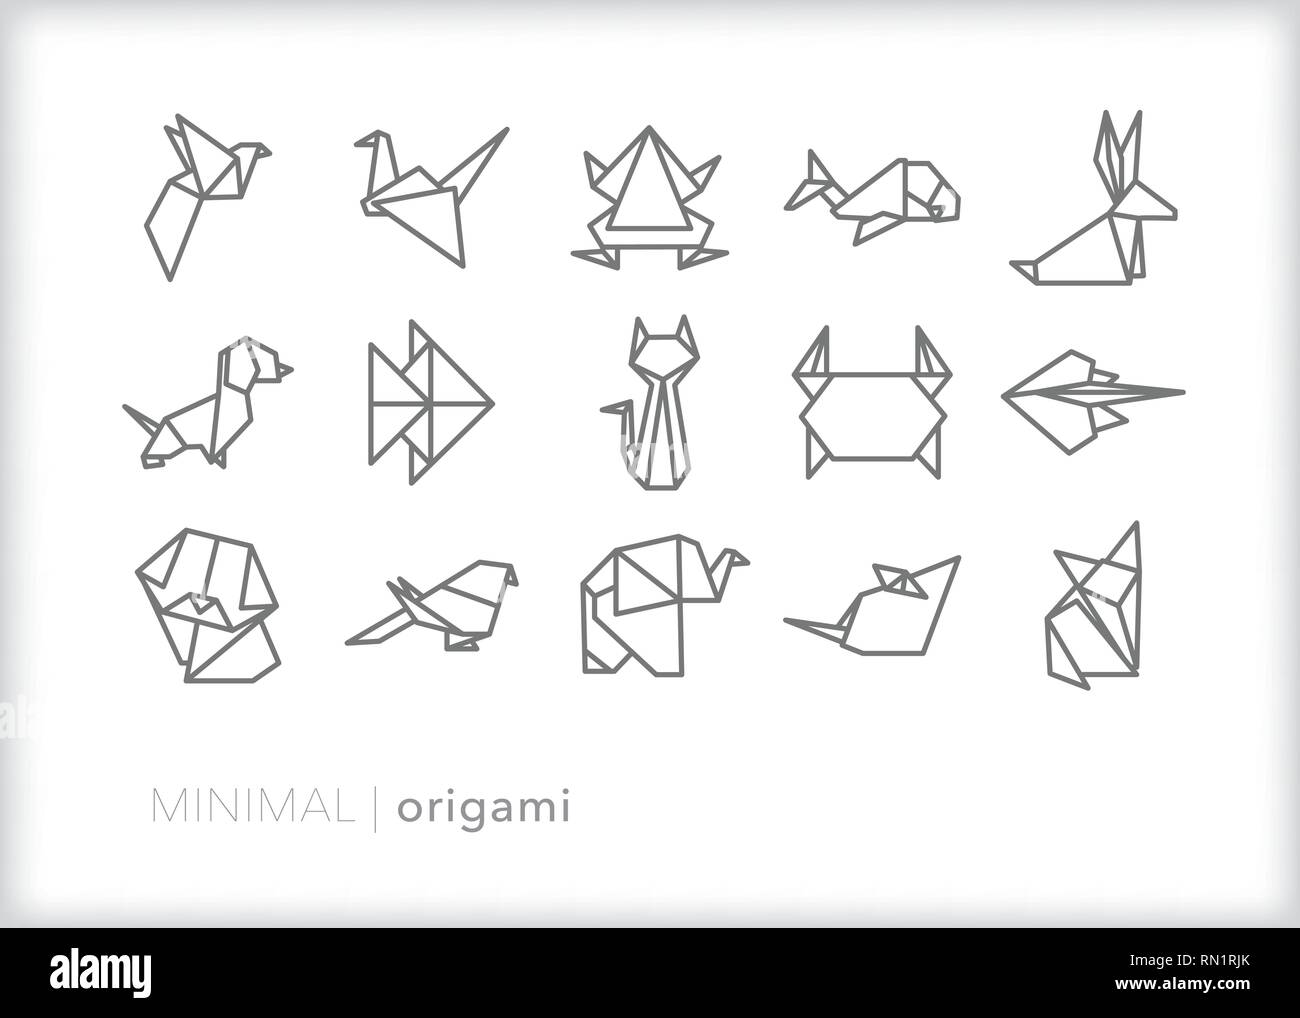 Satz von 15 grau Tier origami Icons, die über verschiedene Säugetiere, Vögel und Kreaturen wie gefaltetes Papier Kunst Stock Vektor